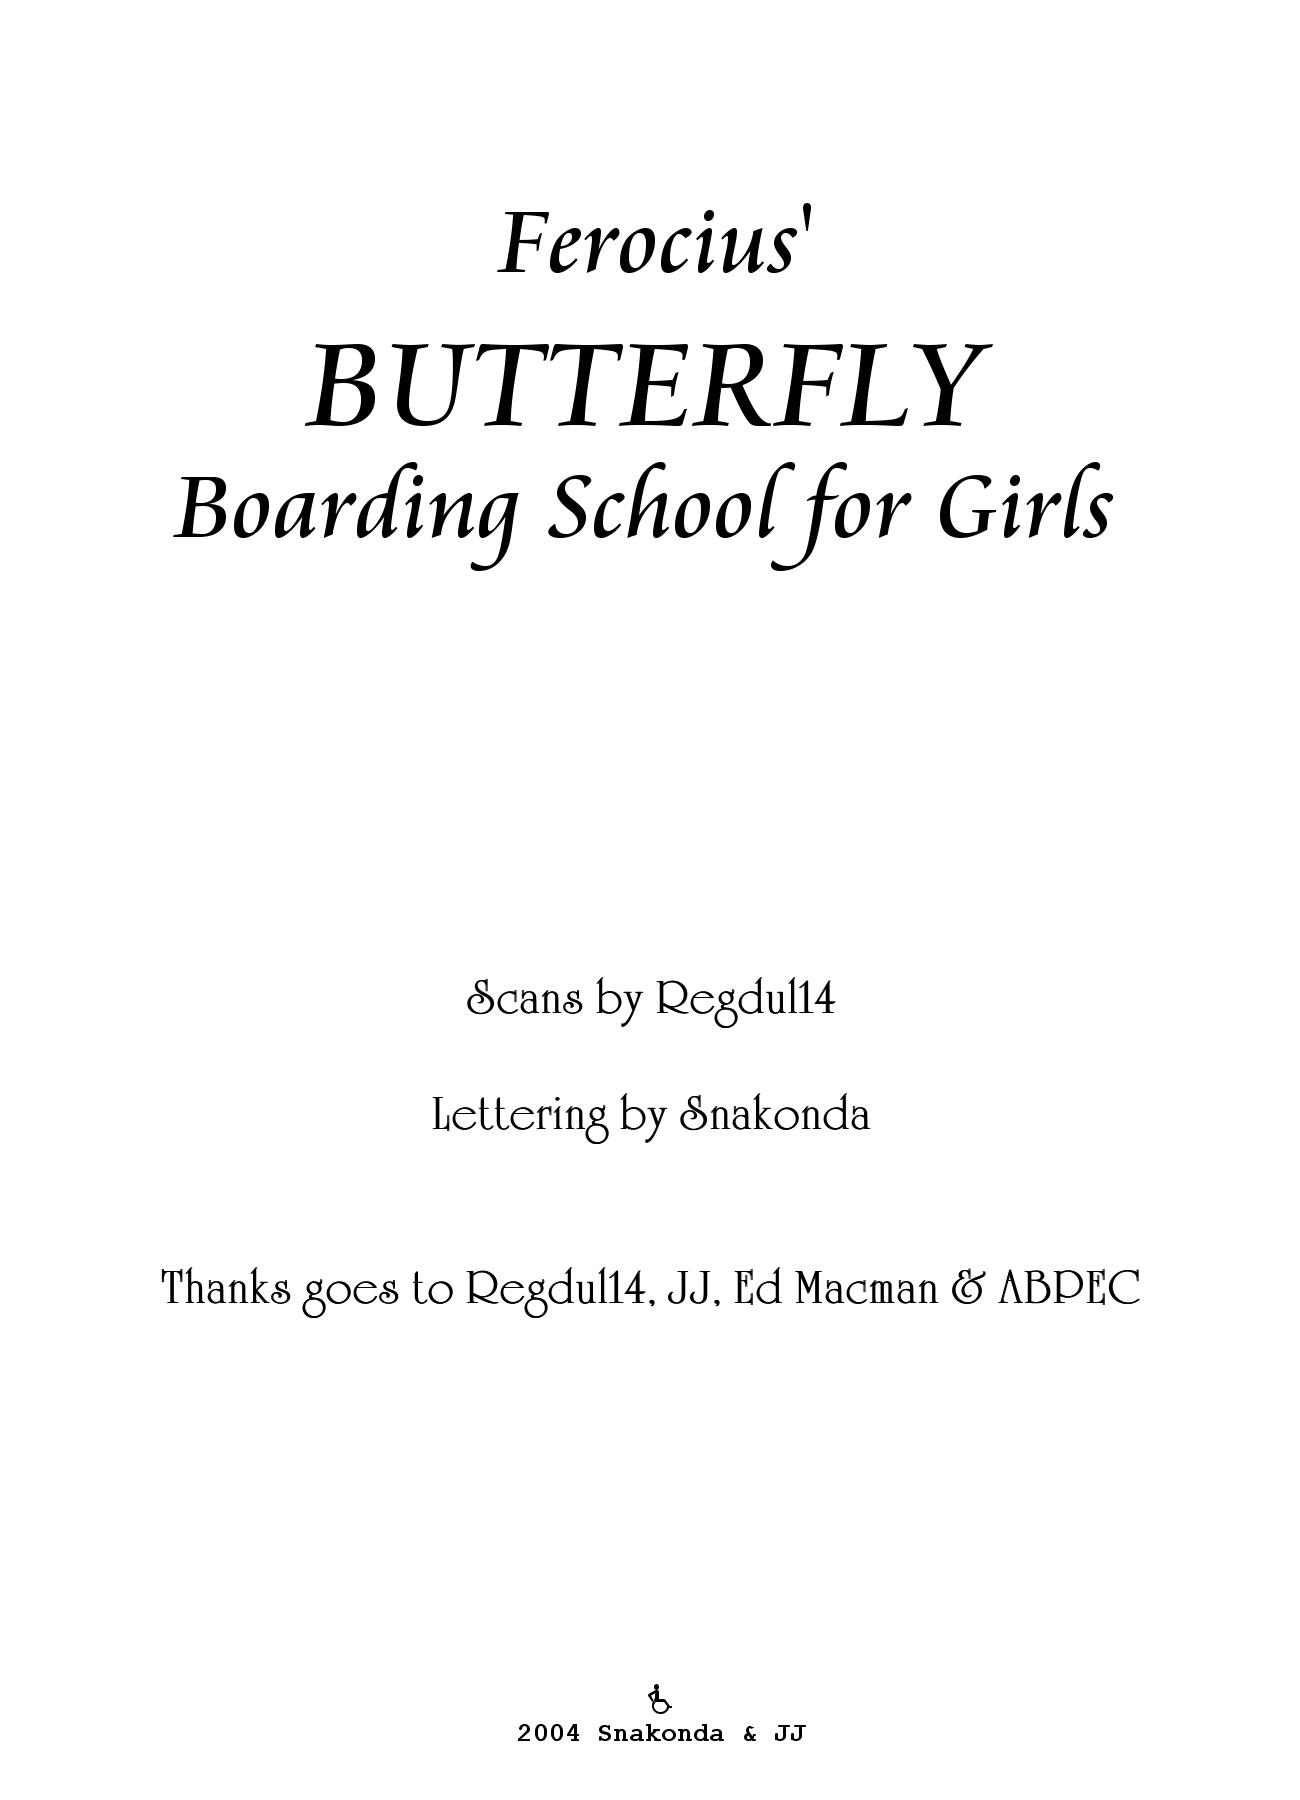 Ferocius - Butterfly Boarding School For Girls page 2